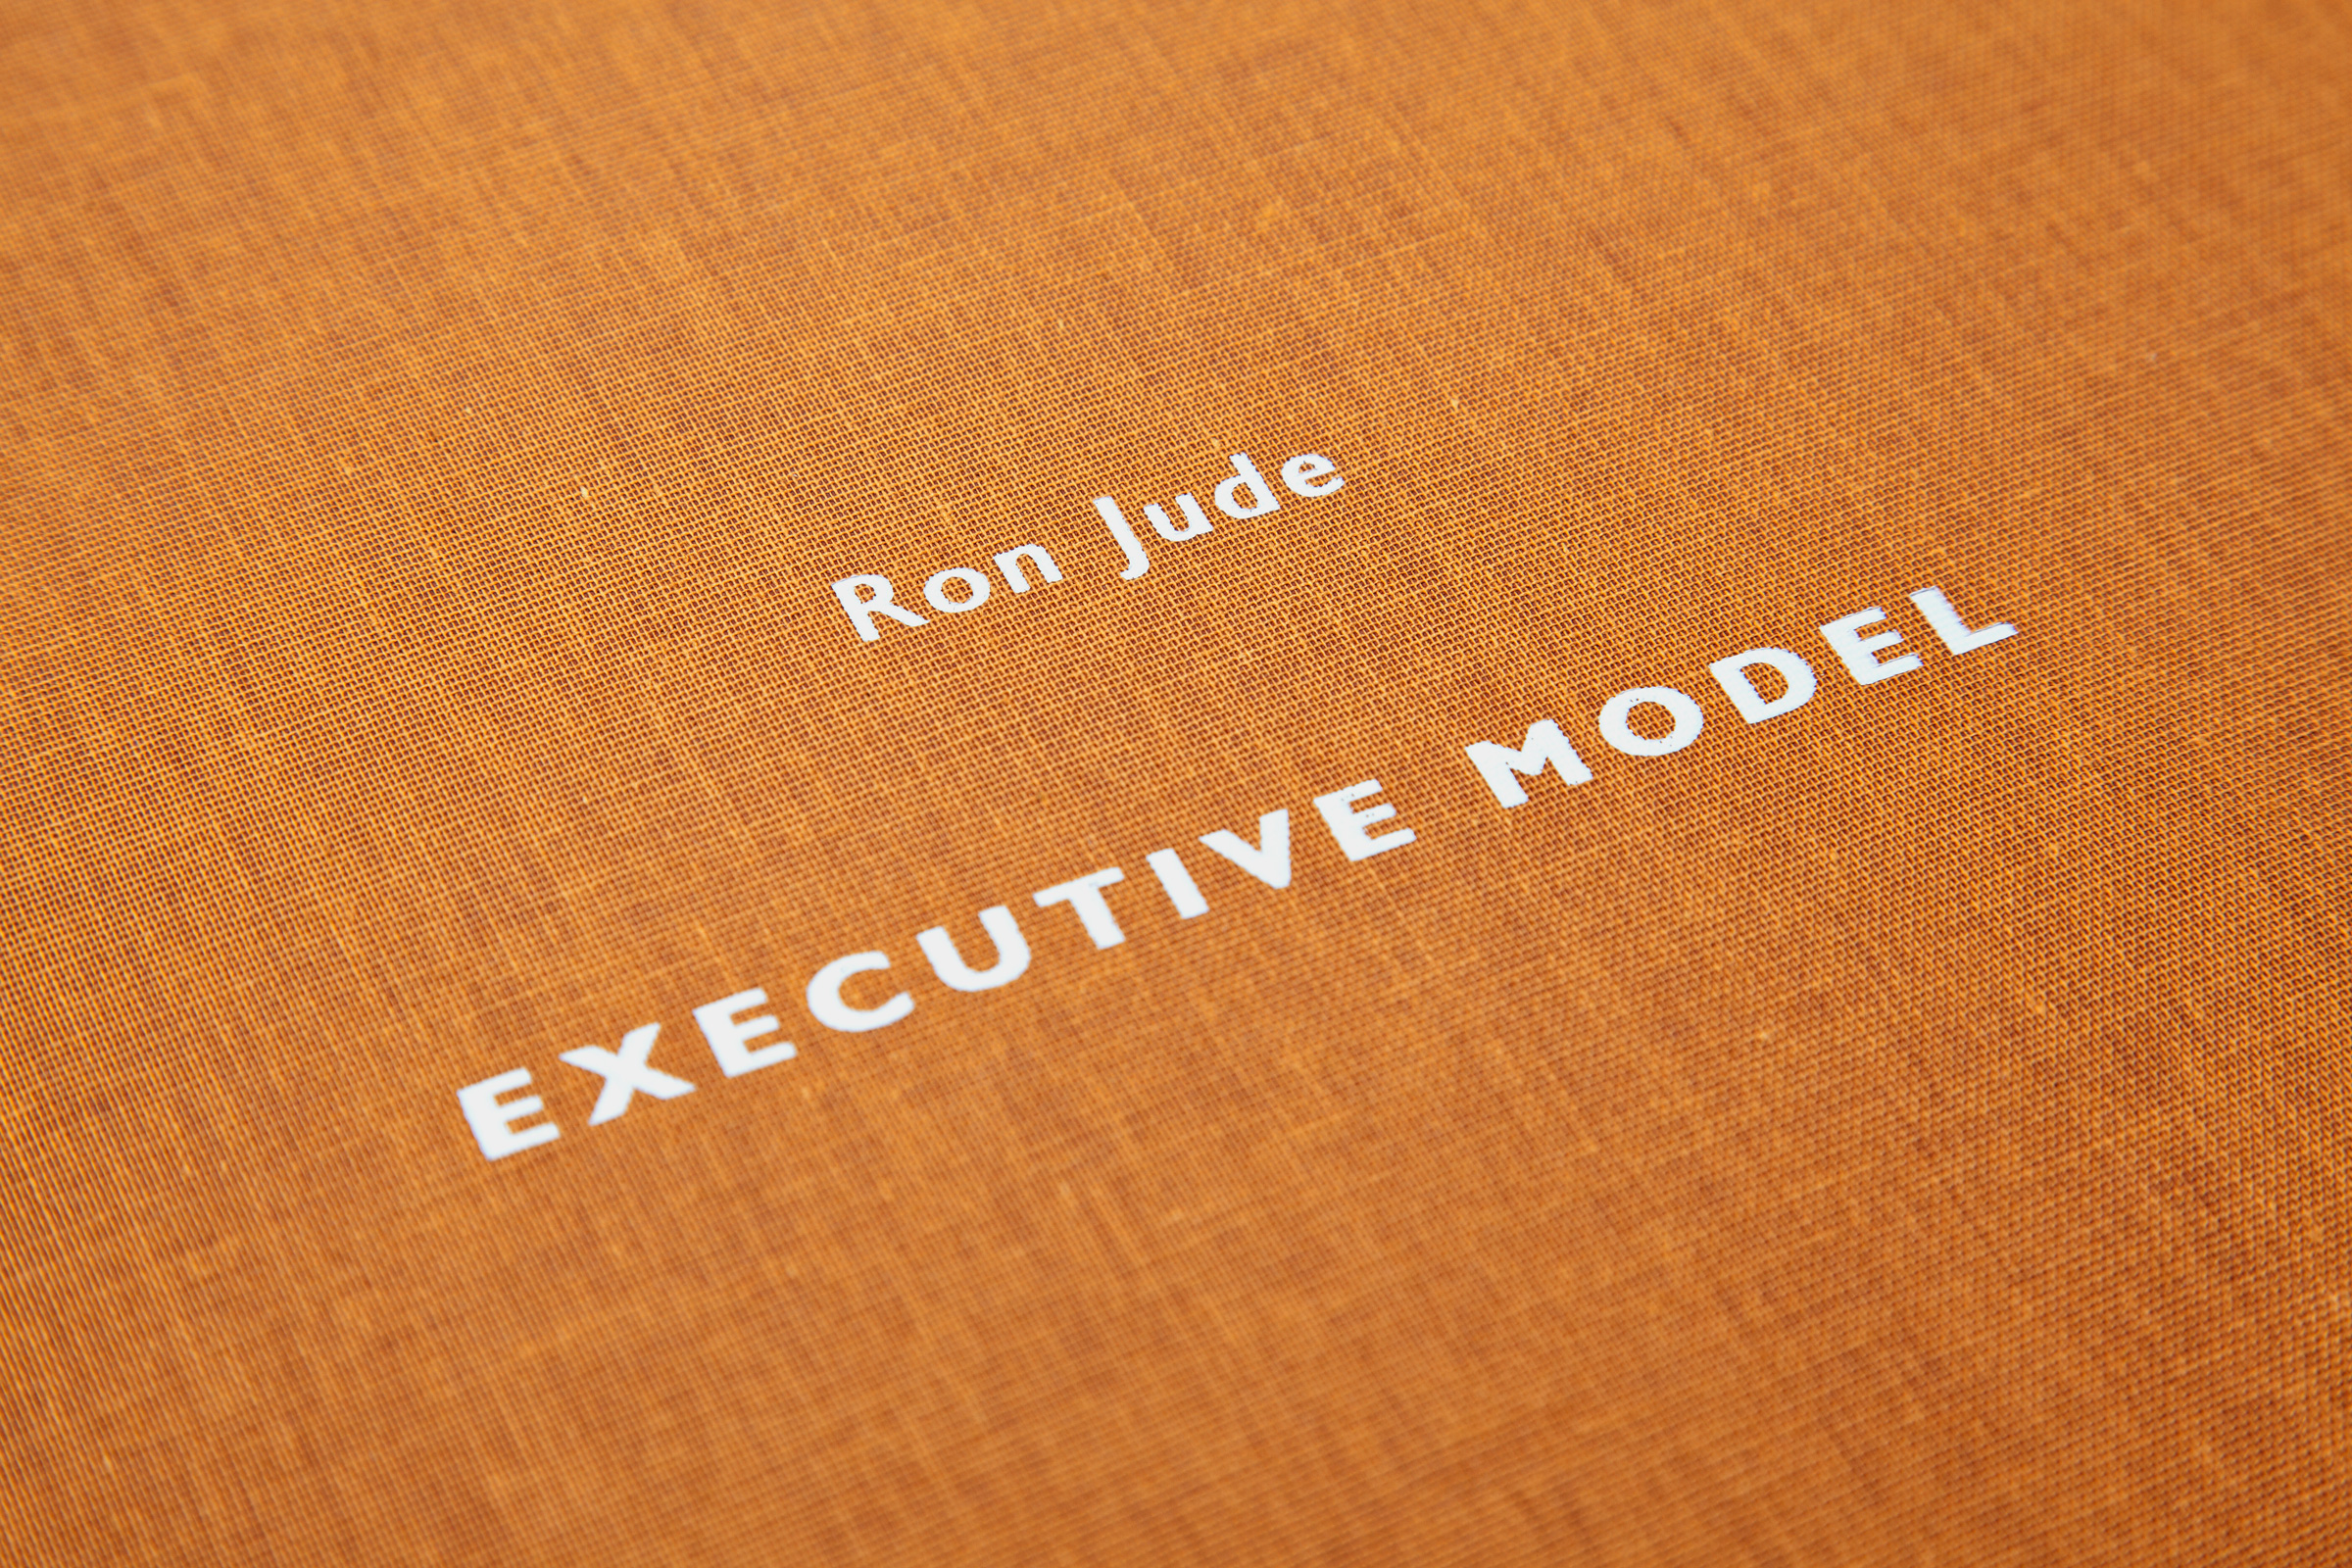 Ron Jude — Executive Model